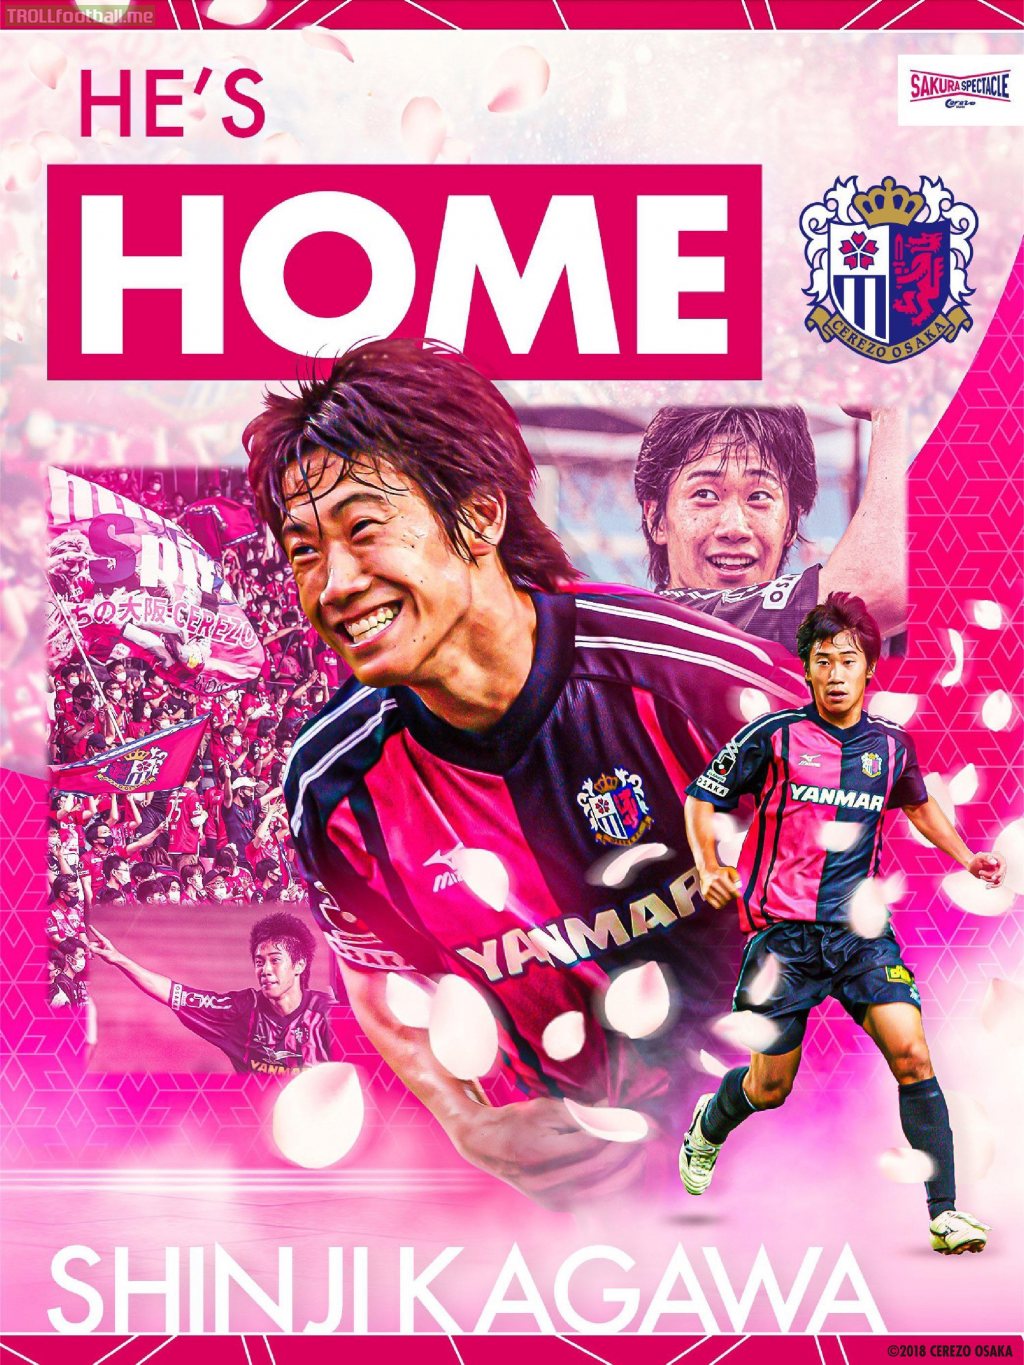 Back where it all started. Welcome home, Shinji Kagawa!